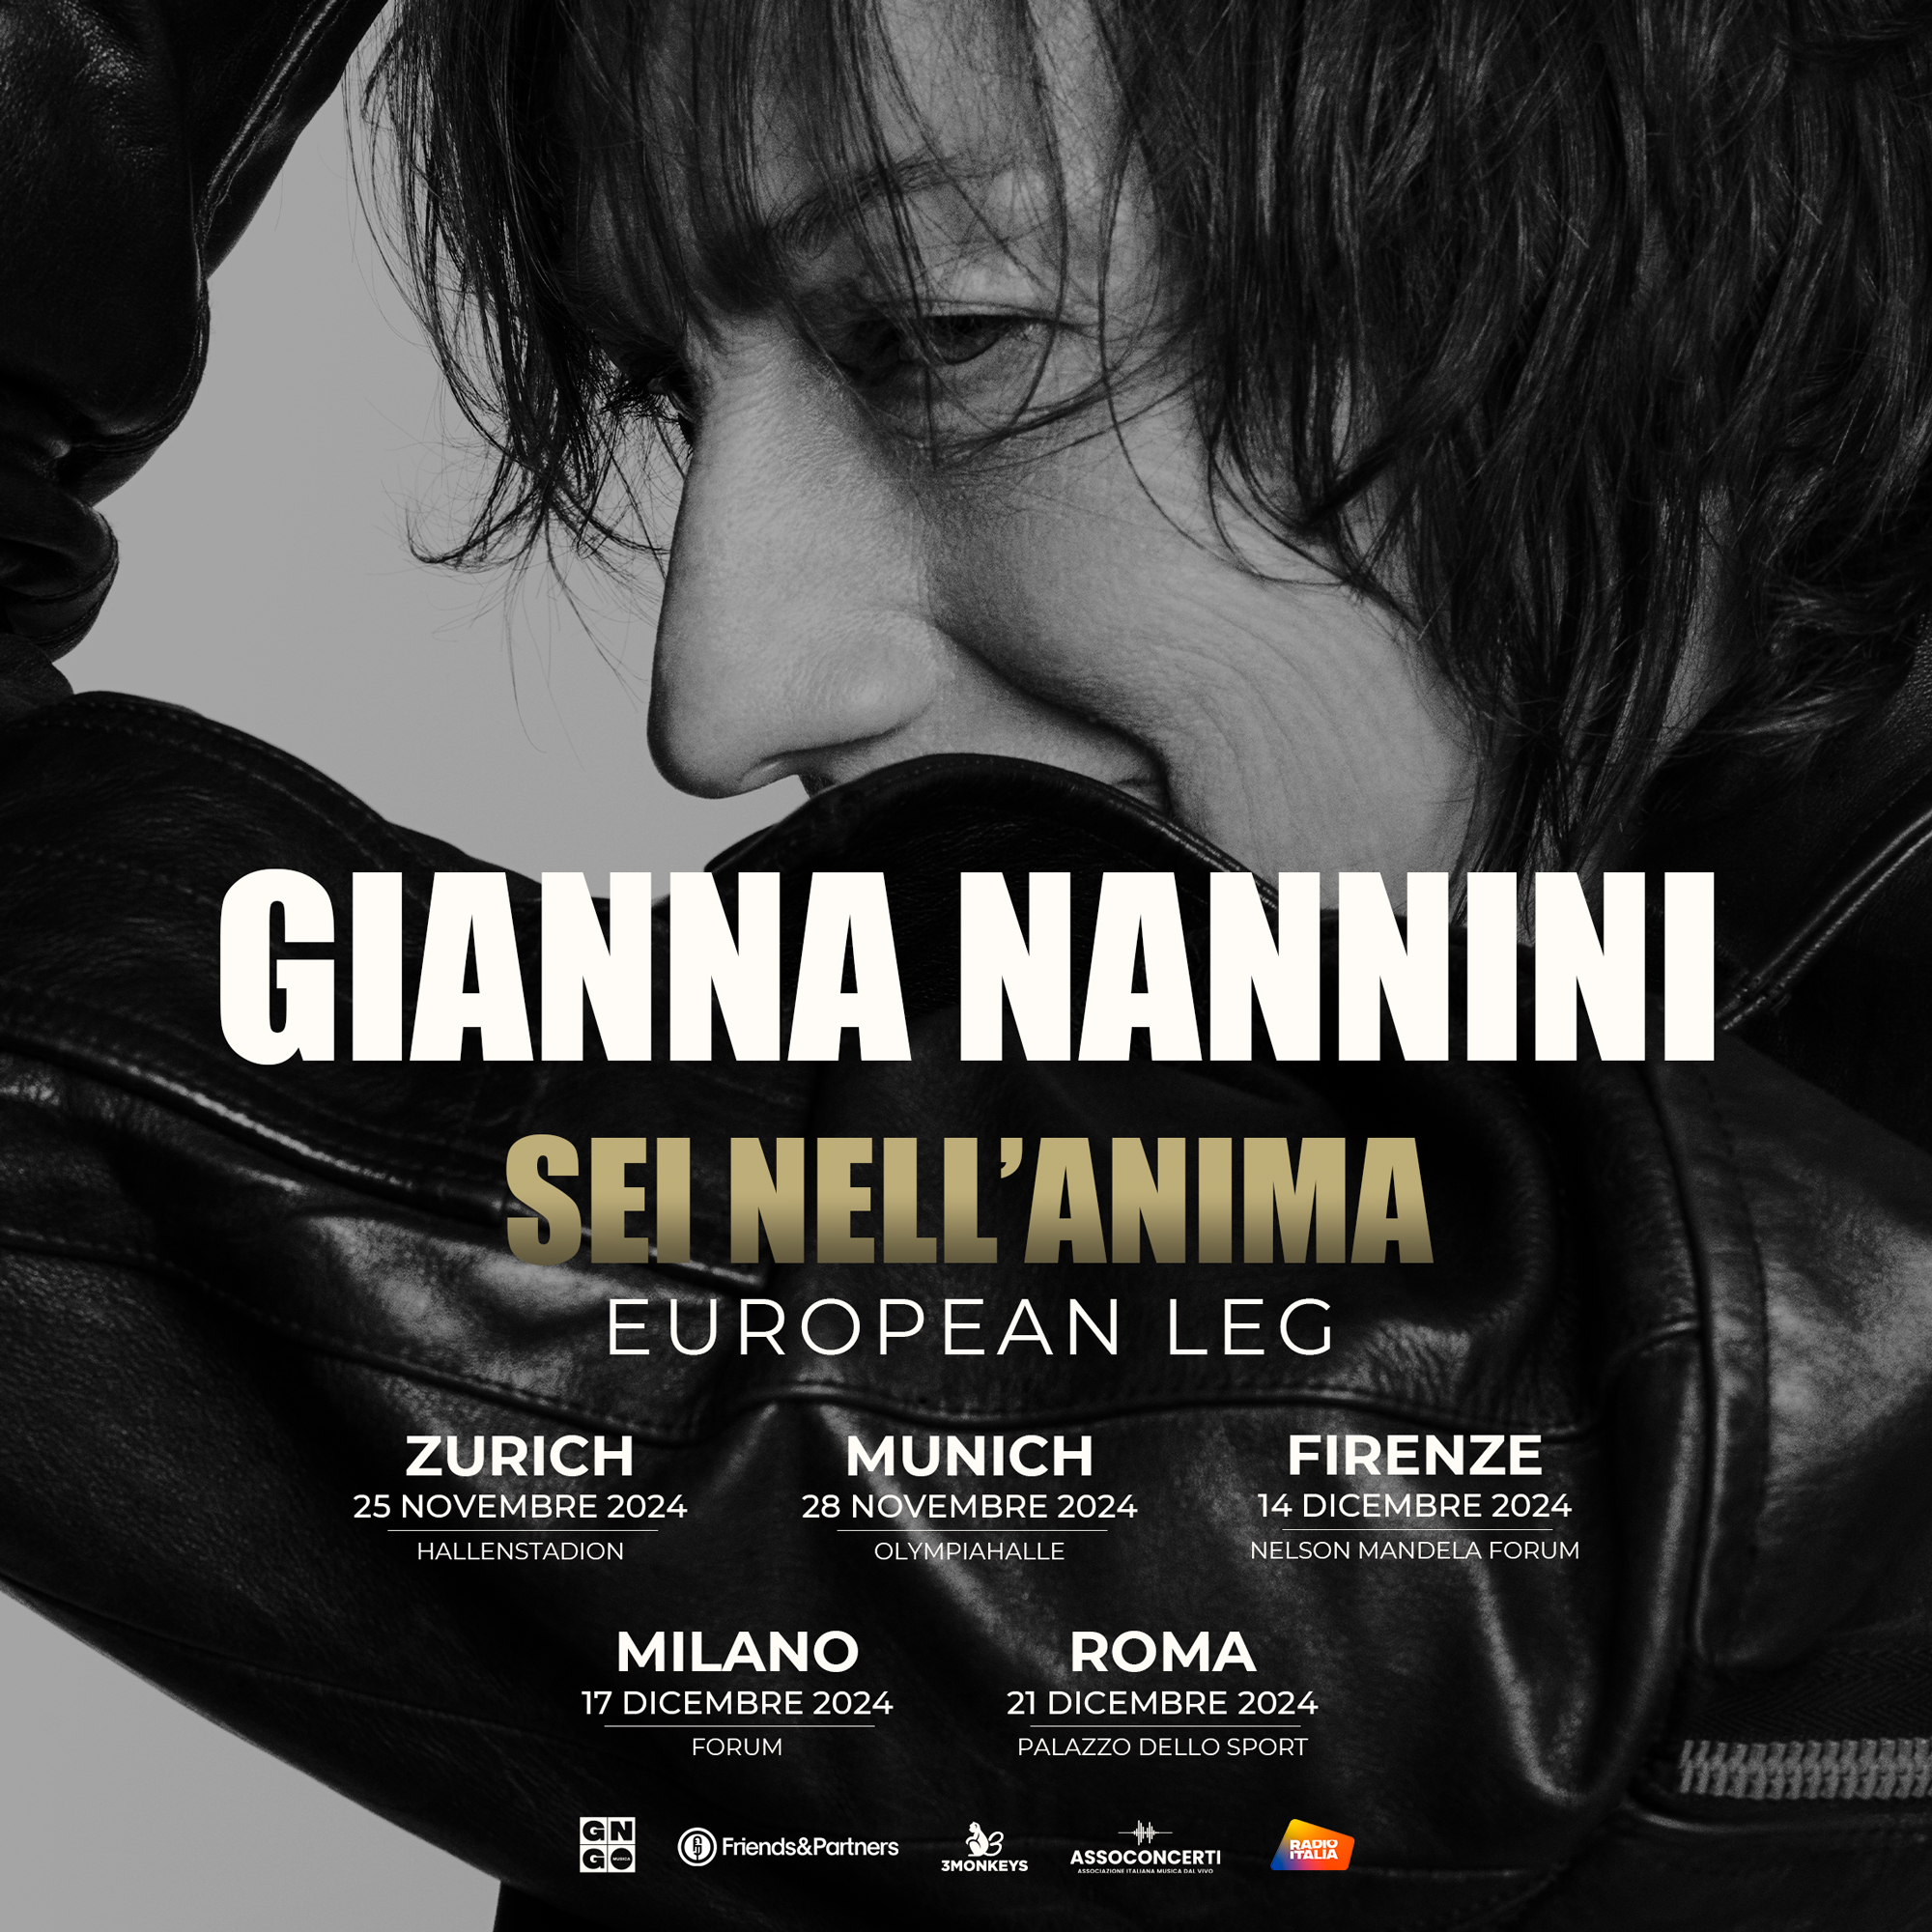 Gianna Nannini - Sei Nell'anima en Uber Eats Music Hall Tickets